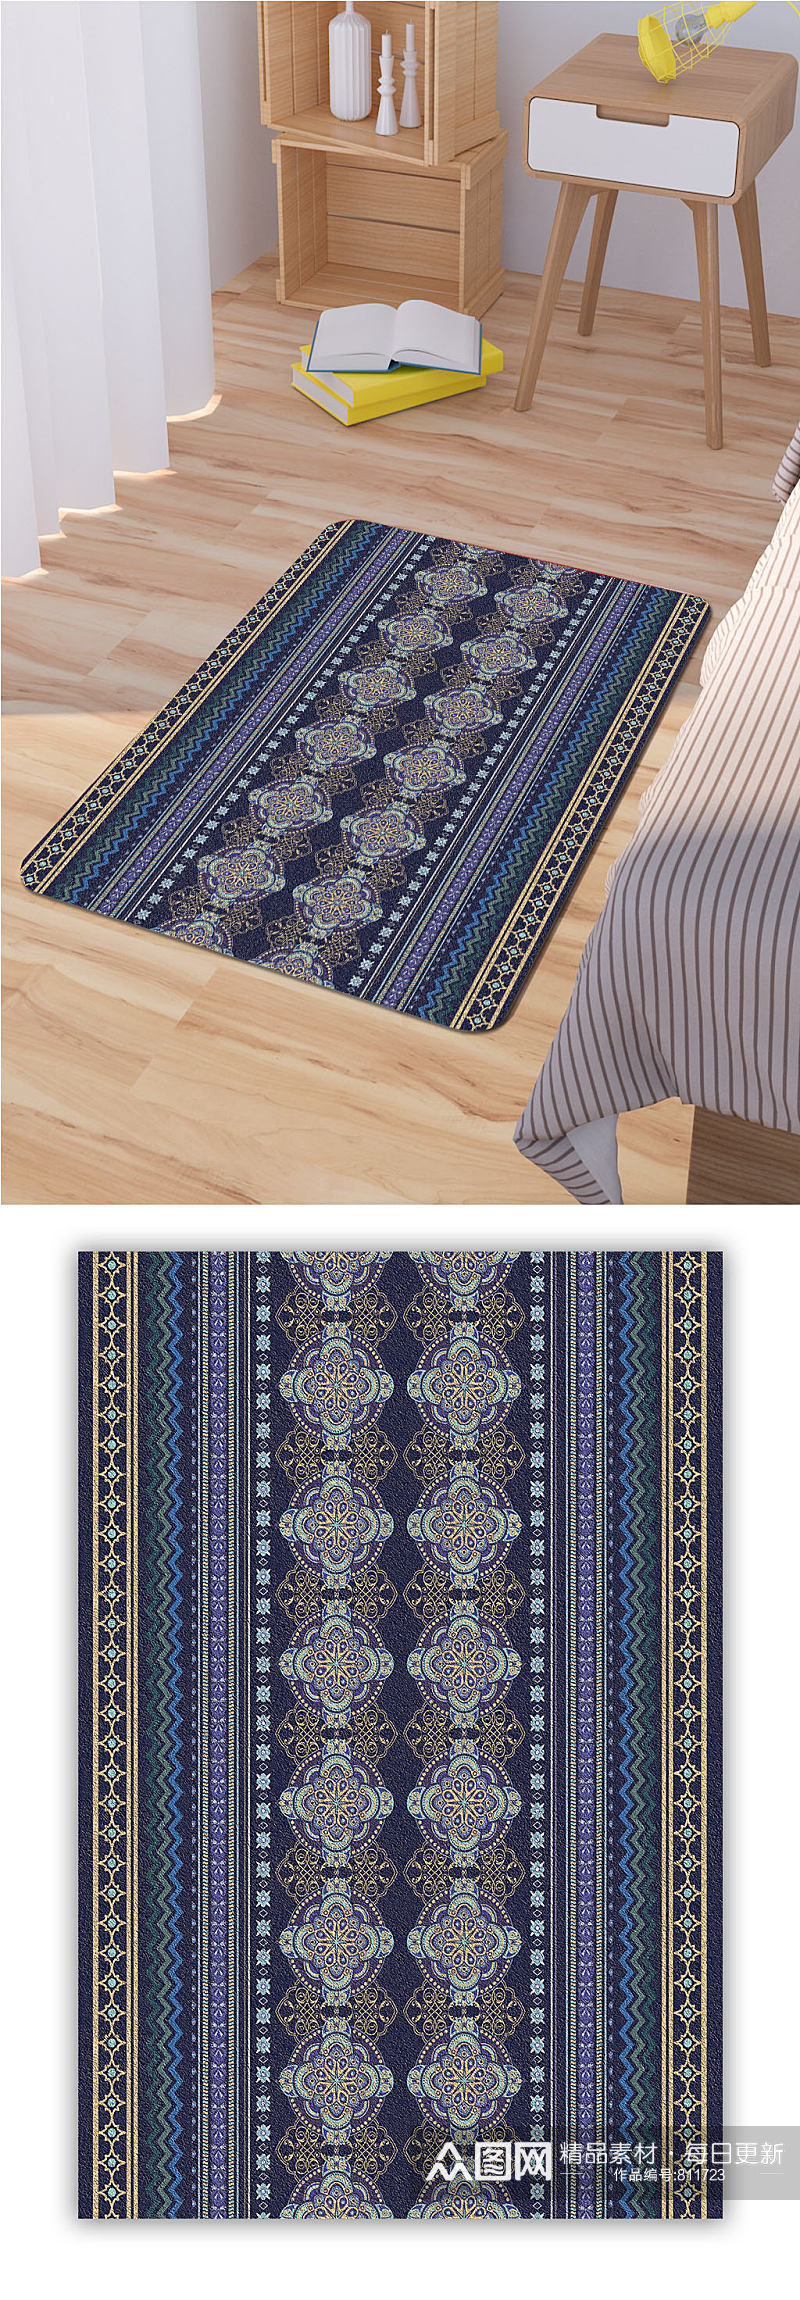 现代简约地毯中式地毯素材